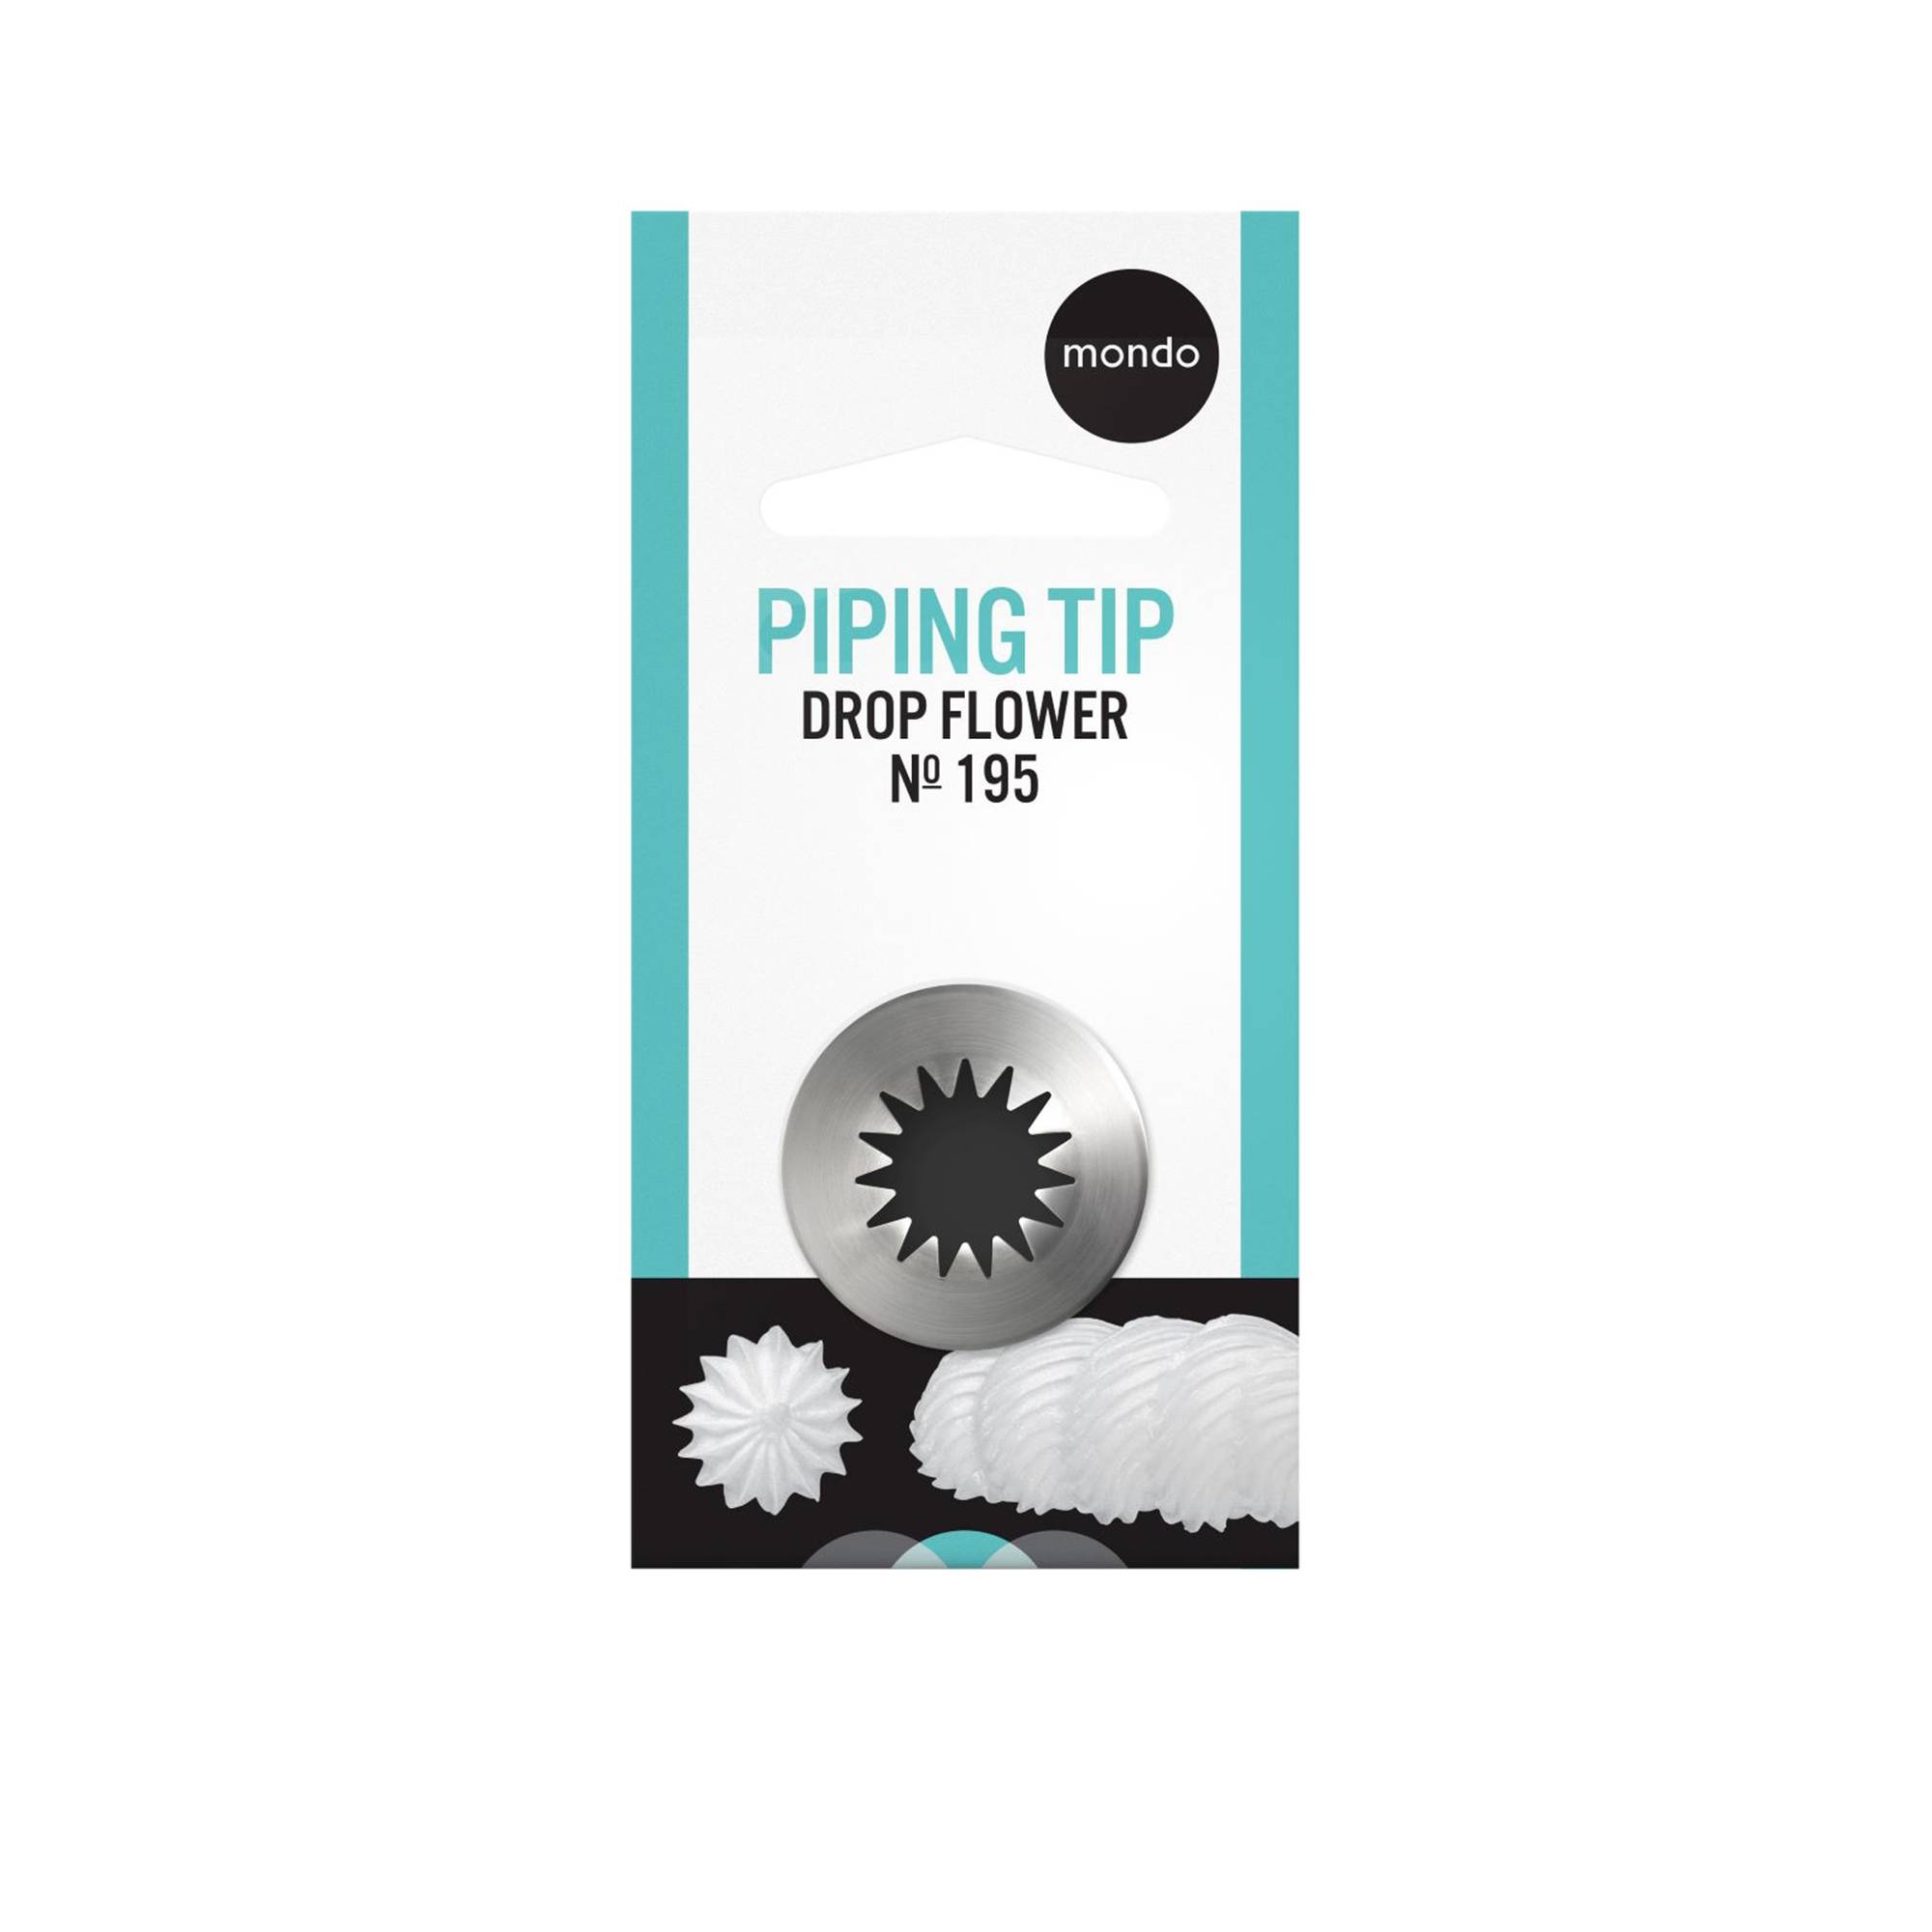 Mondo LG Drop Flower Piping Tip #195 Image 1